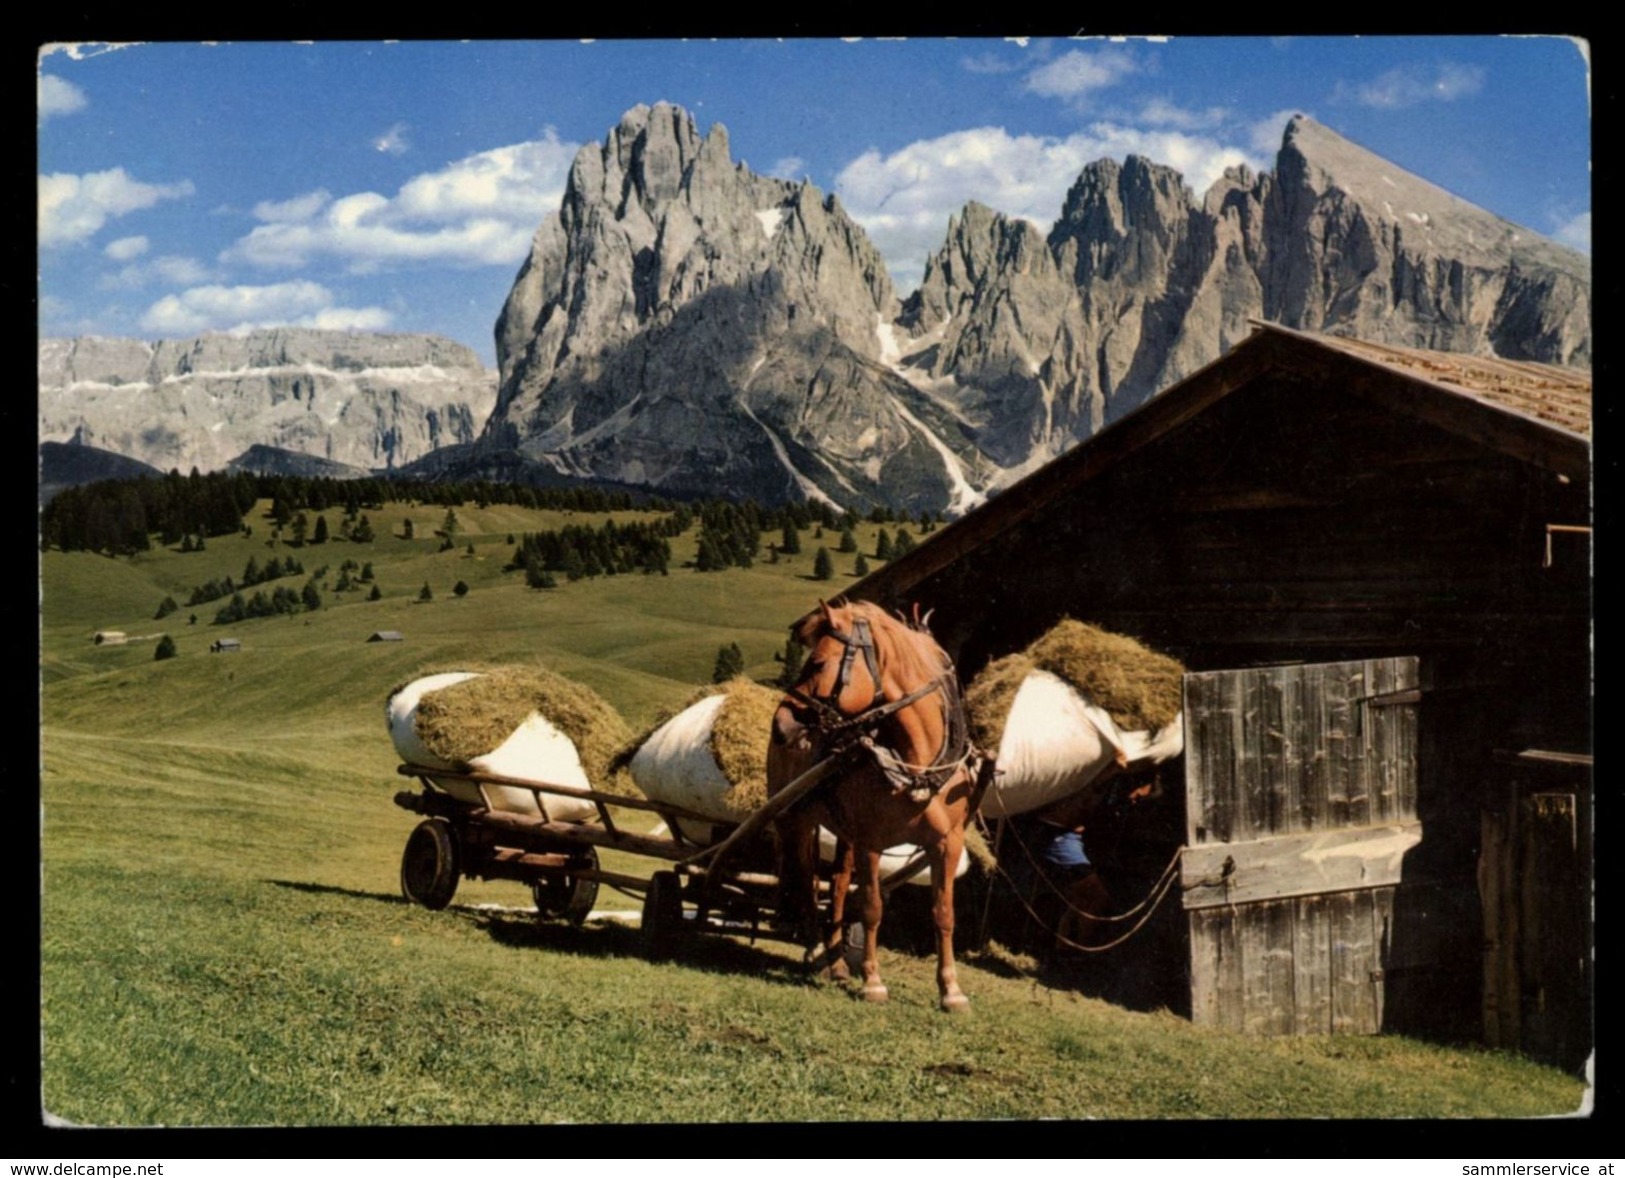 [015] Pferde-Karte 131, Leiterwagen, Seiseralm, Dolomiten, Südtirol, ~1980 - Paarden